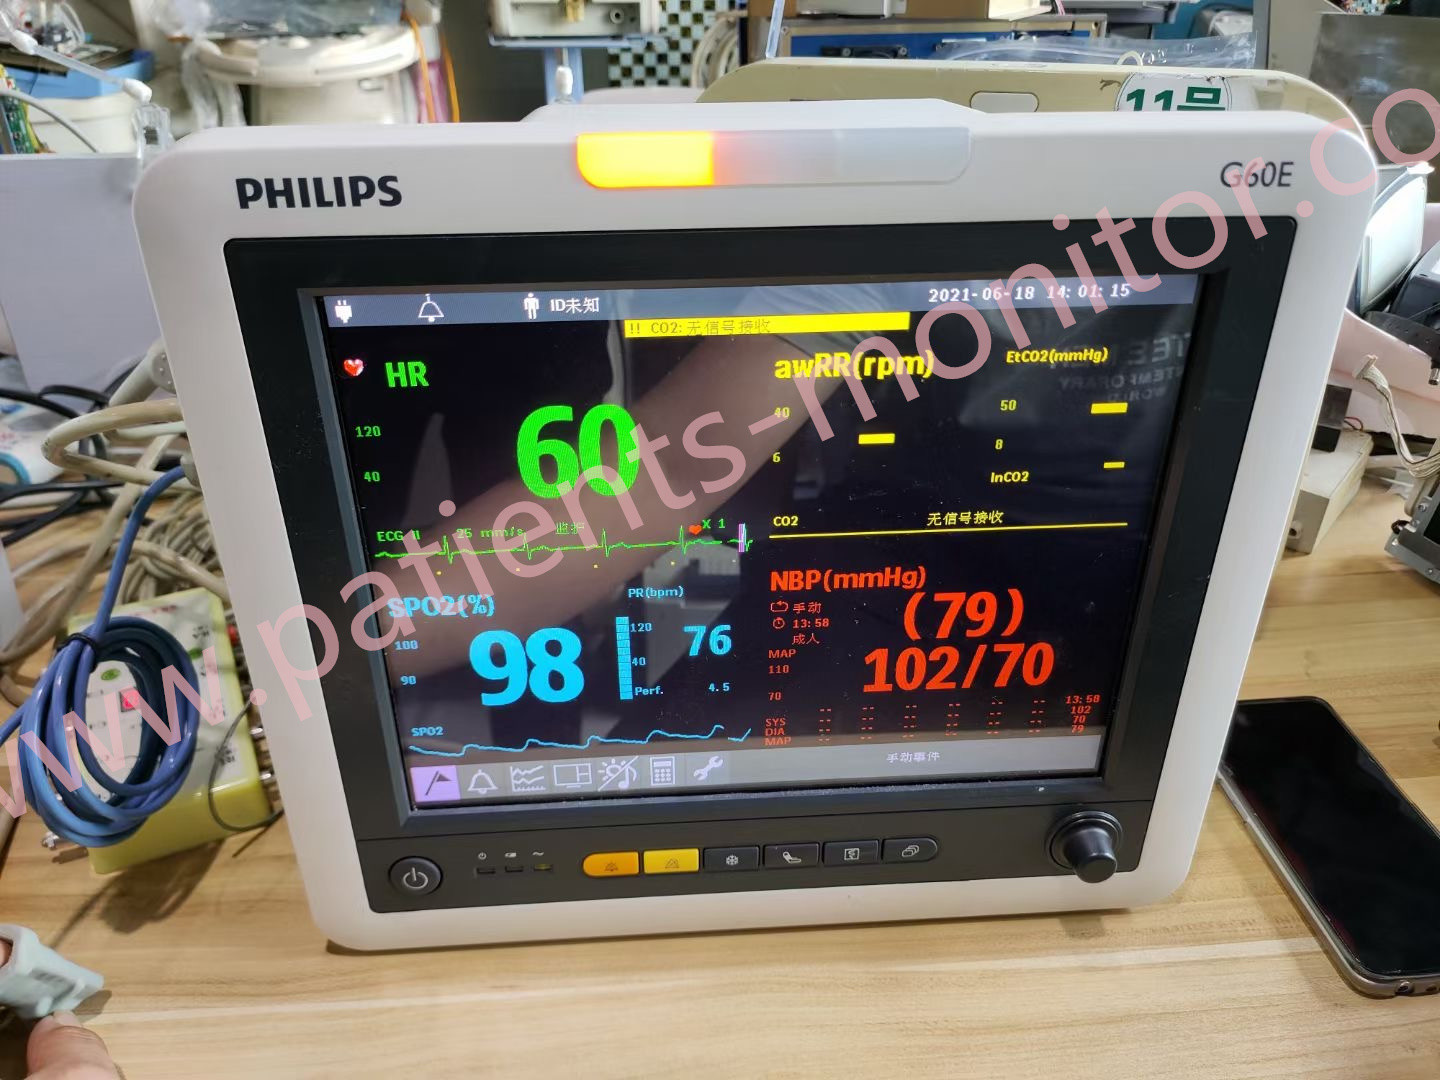 Monitor paziente di Philip G60E ICU per la clinica dell'ospedale